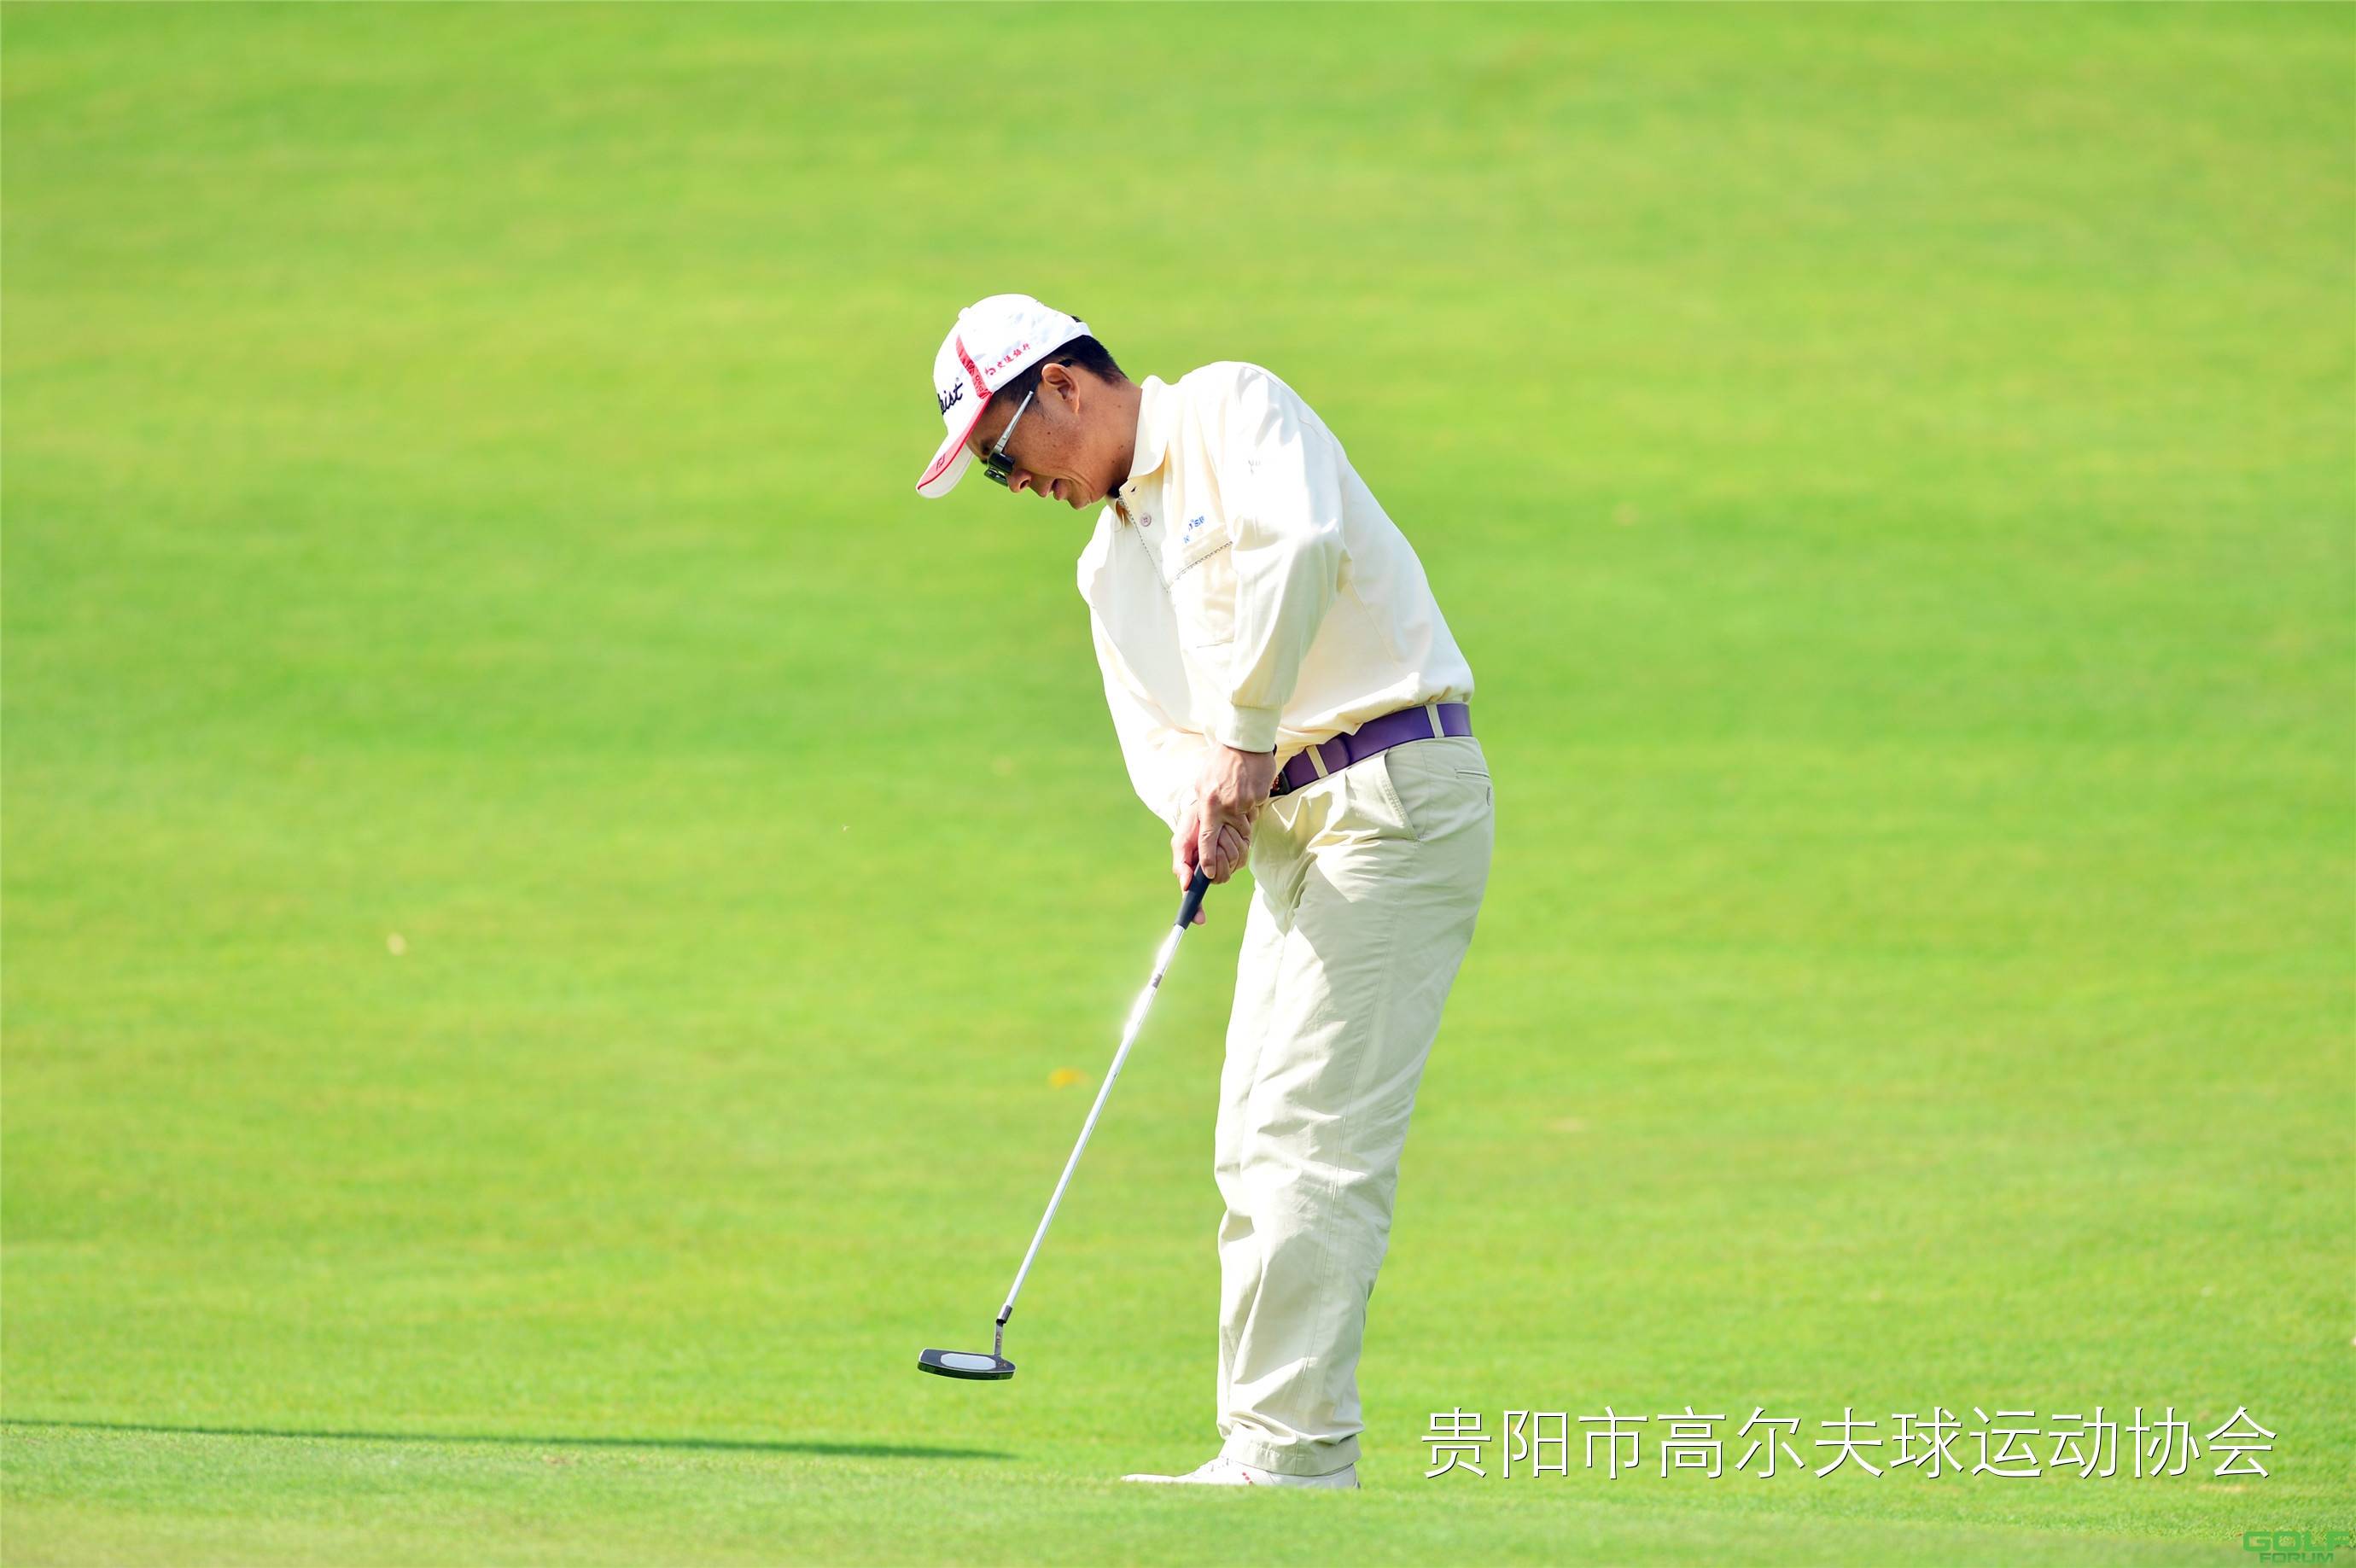 2014红华杯·贵州业余高尔夫锦标赛球员风采第六组谌祝勋张宏肖浩 ...